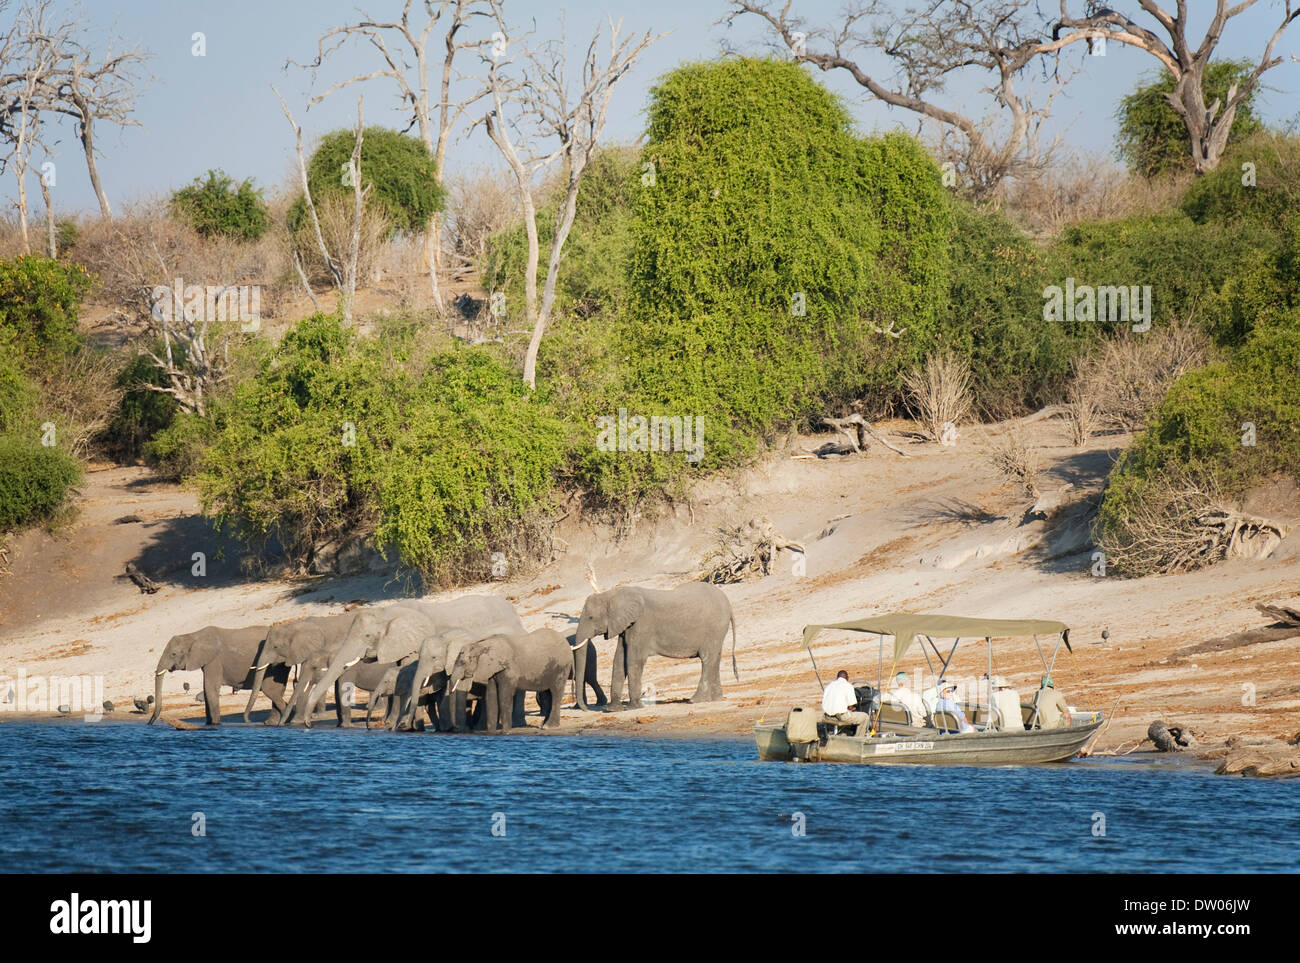 Les touristes sur un bateau de croisière sur la rivière Chobe observer un troupeau de reproduction des éléphants d'Afrique (Loxodonta africana) boire à la Banque D'Images